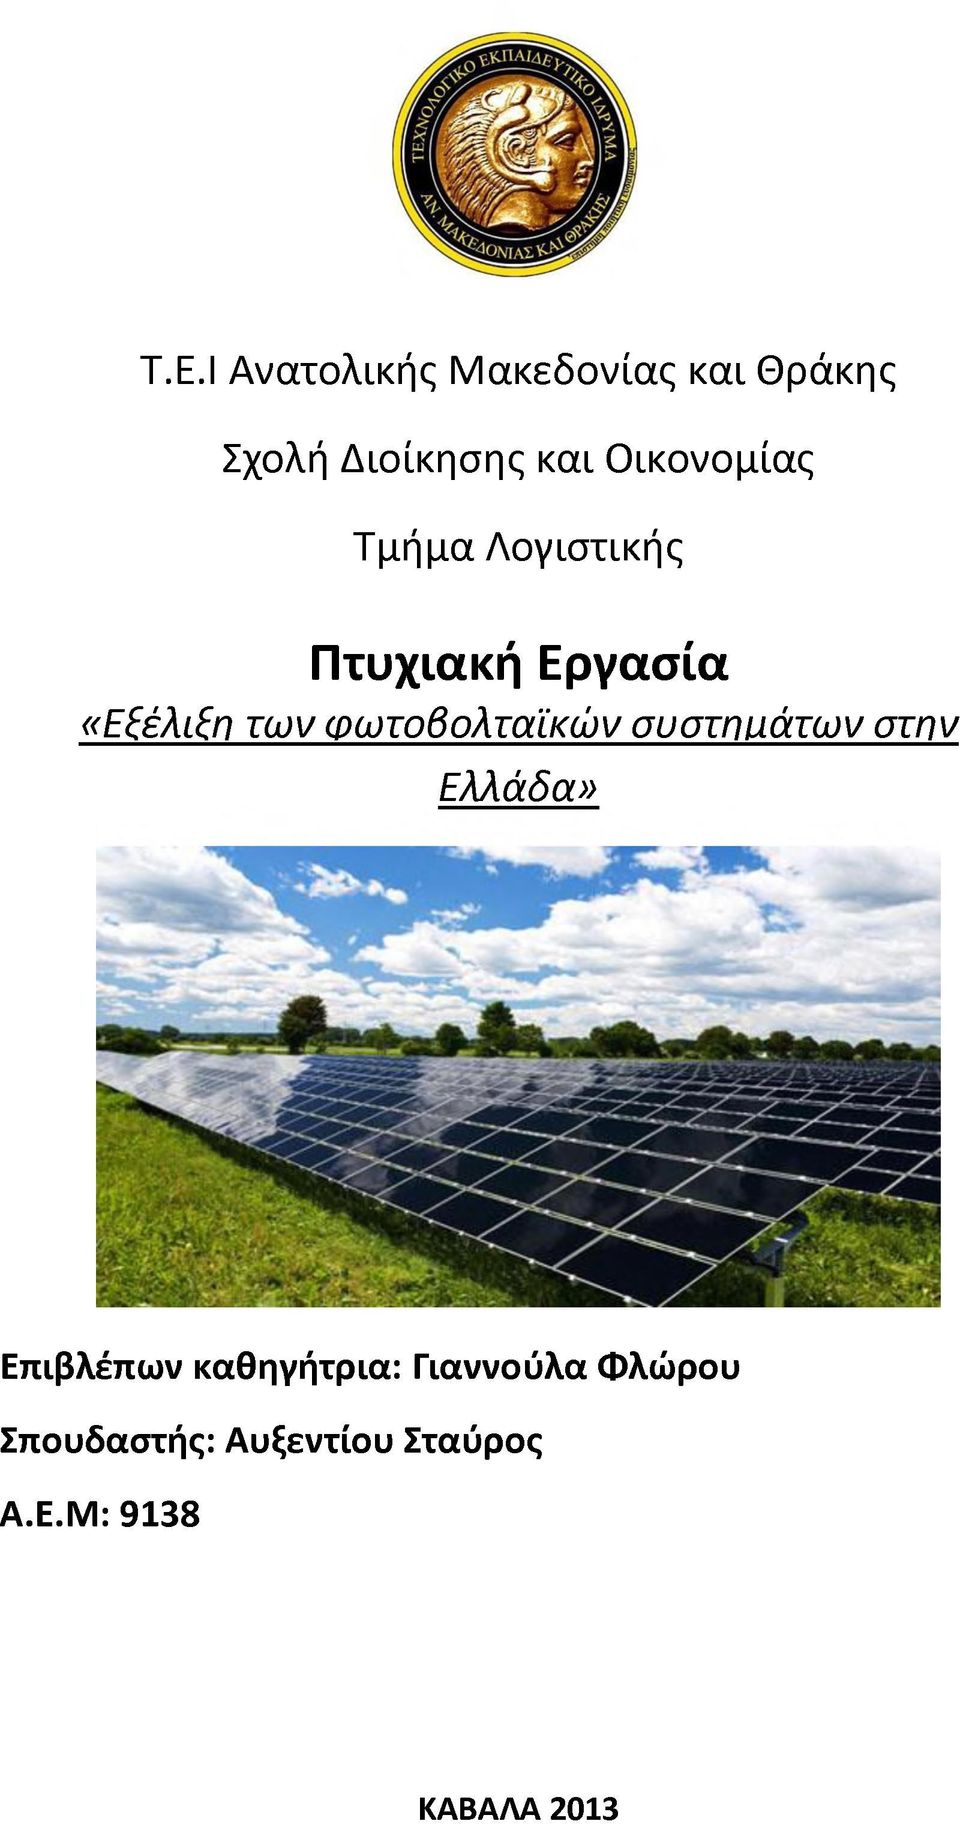 φωτοβολταϊκών συστημάτων στην Ελλάδα» Επιβλέπων καθηγήτρια: